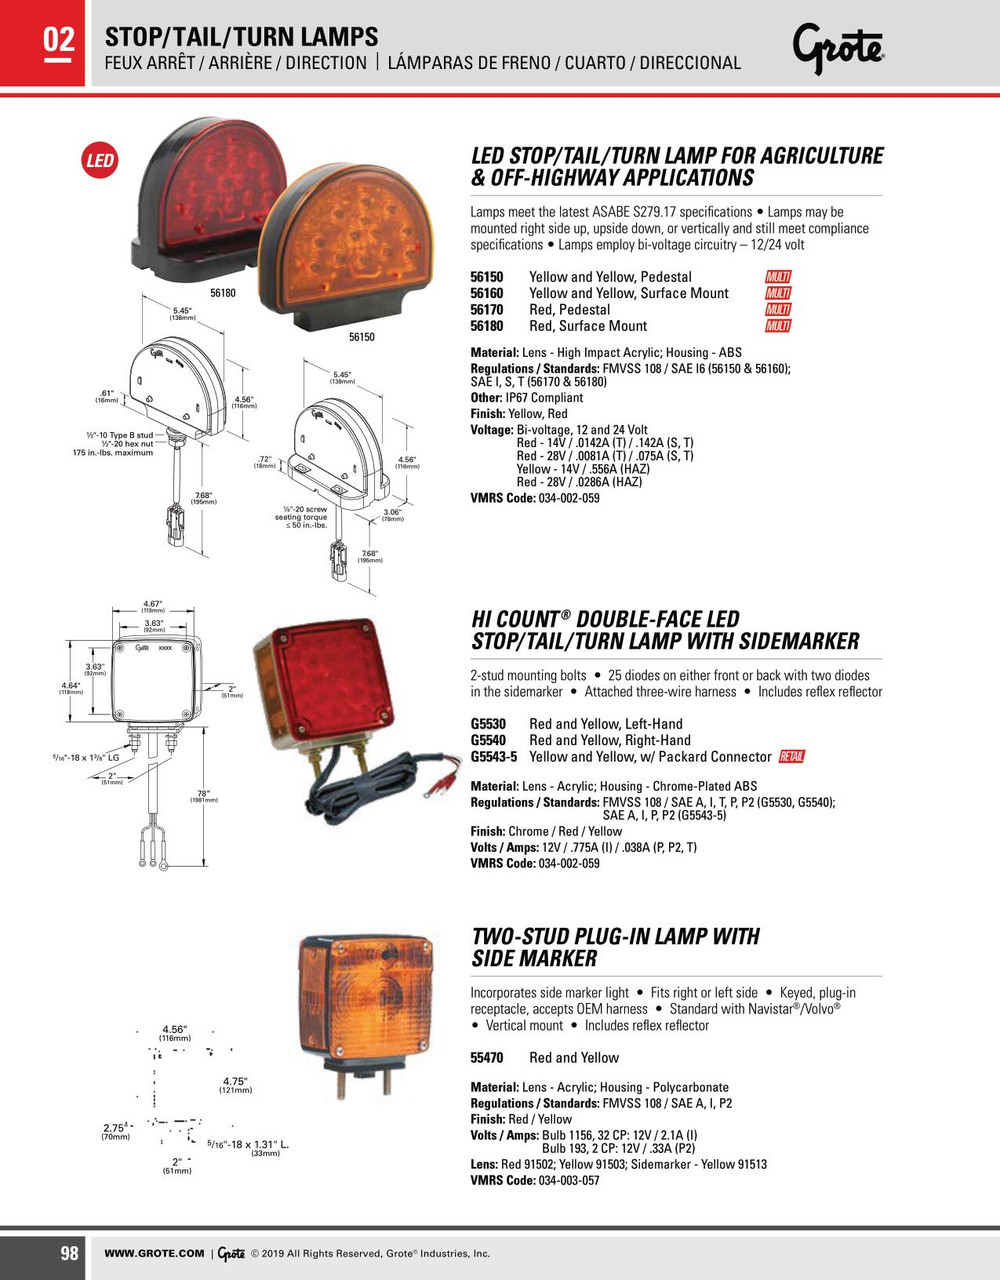 LED Warning Lamp Pedestal - Amber  56150